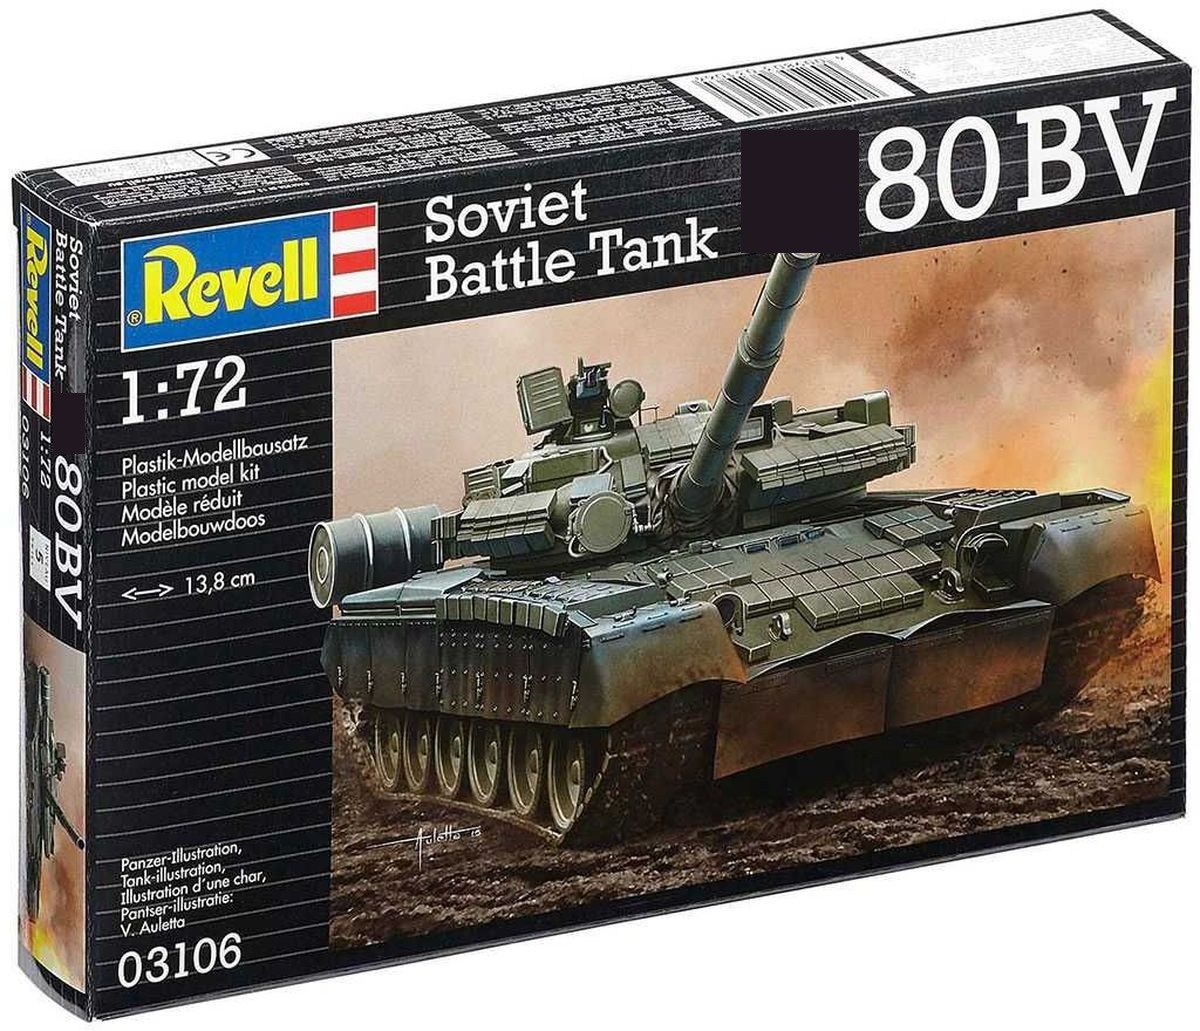 03106  техника и вооружение  Танк-80БВ  (1:72)